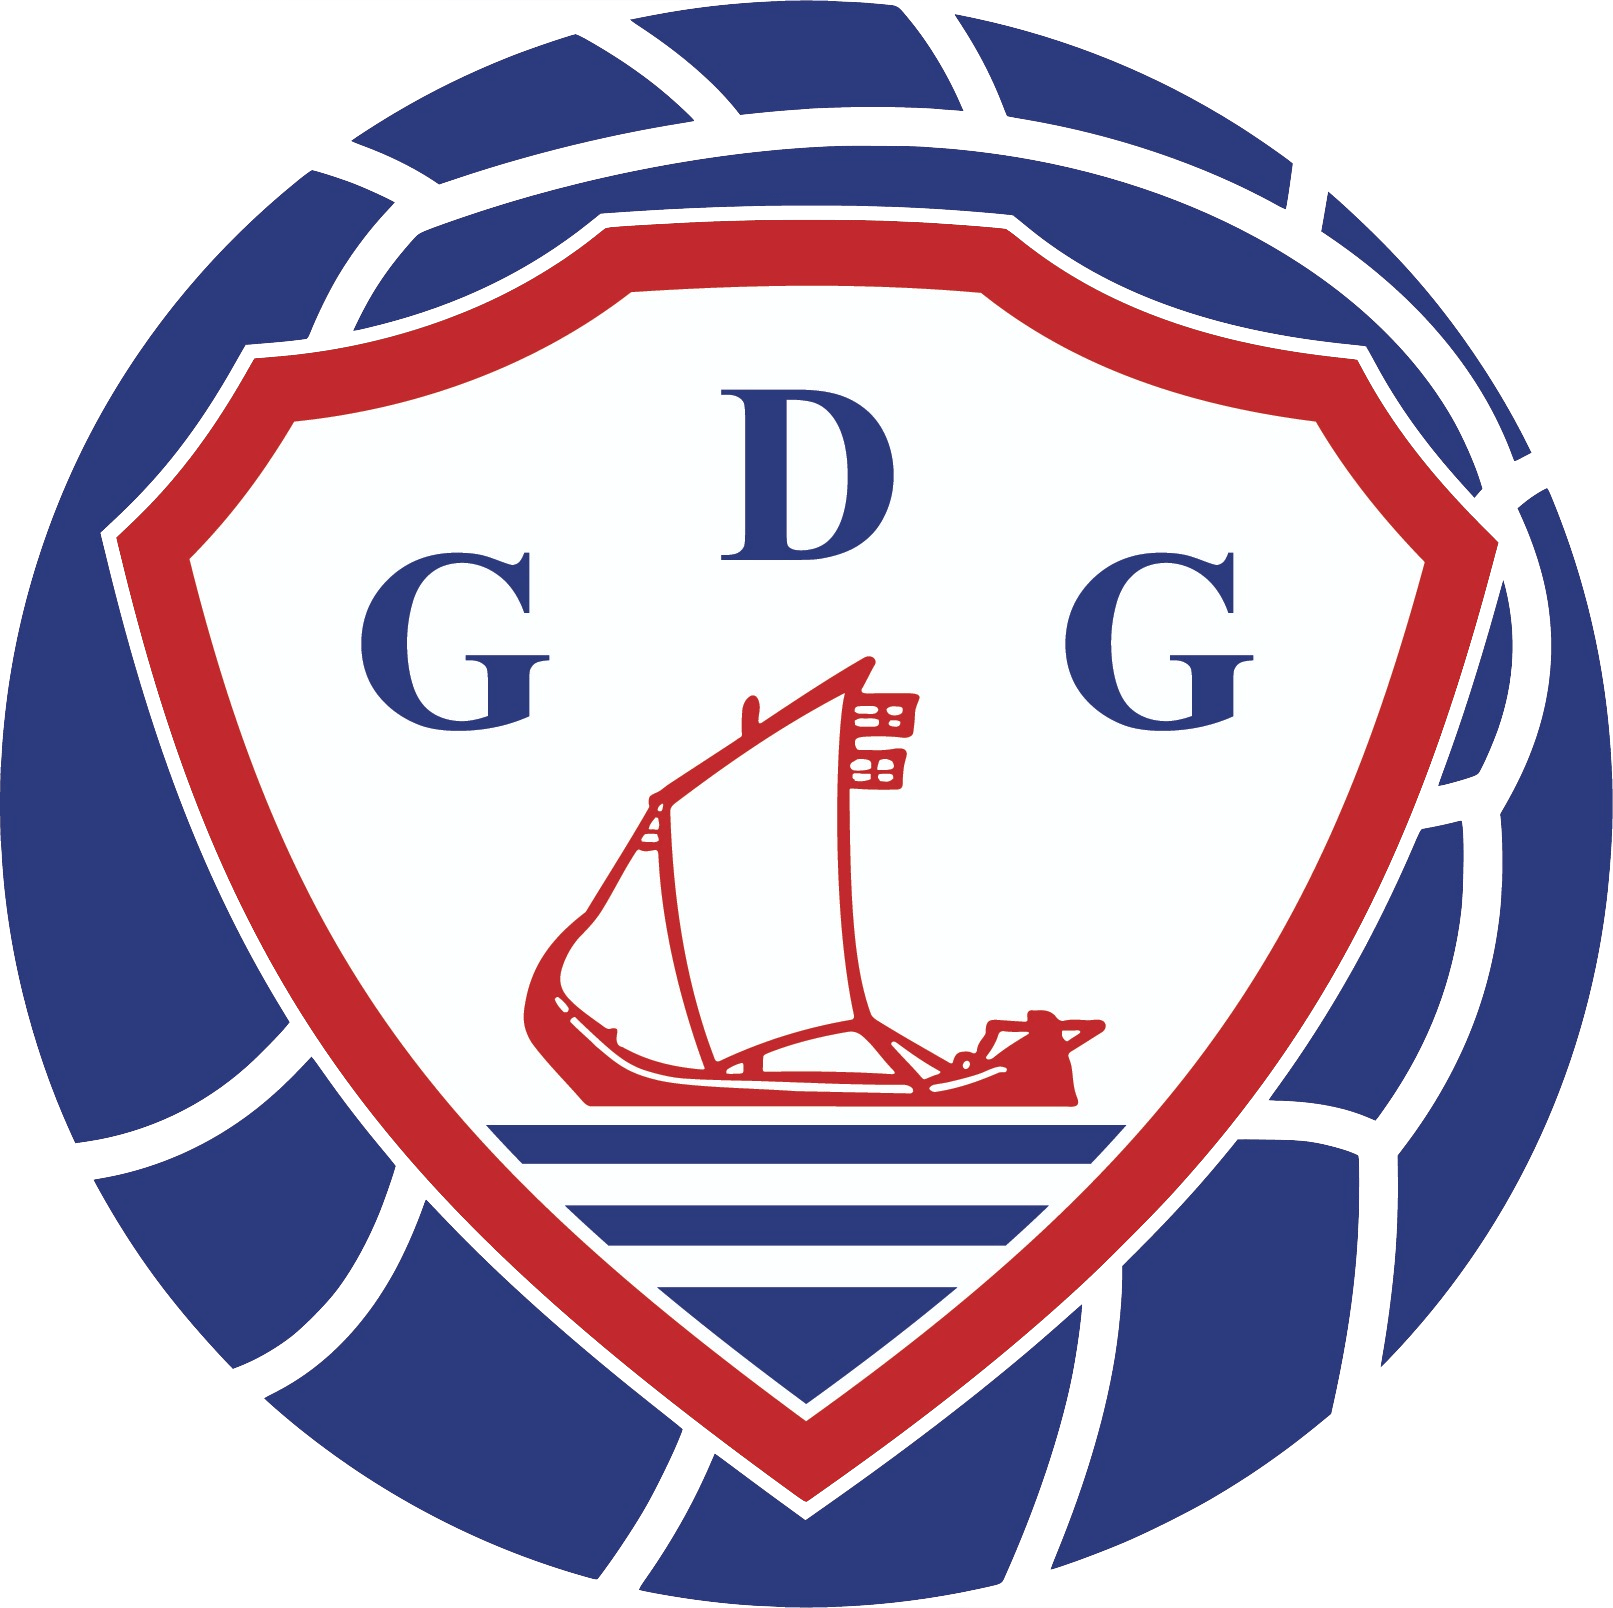 GD Gafanha (Futsal)